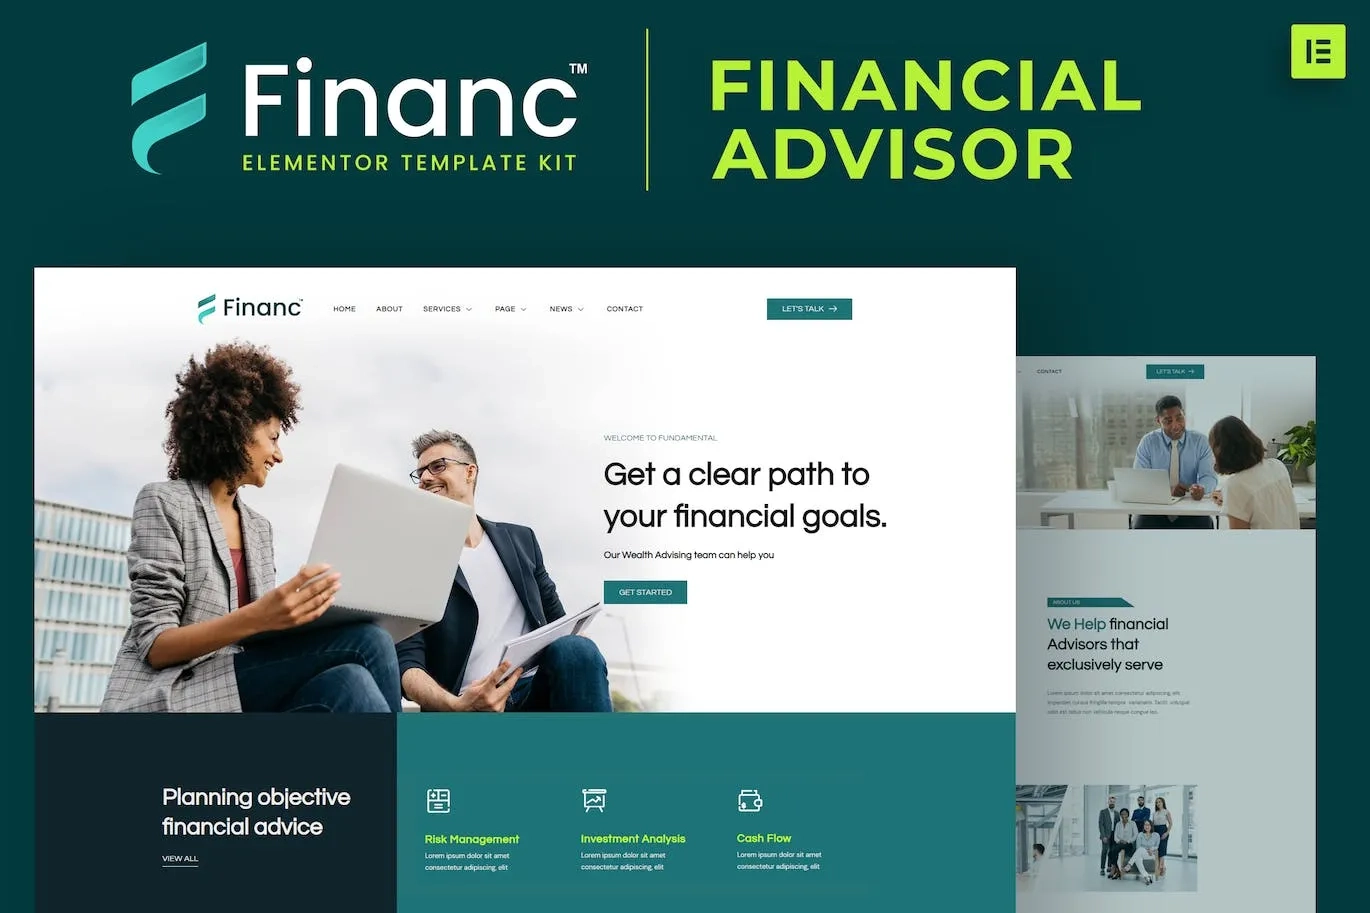 Financ Financial Advisor Elementor Template Kit 80 1697689940 1